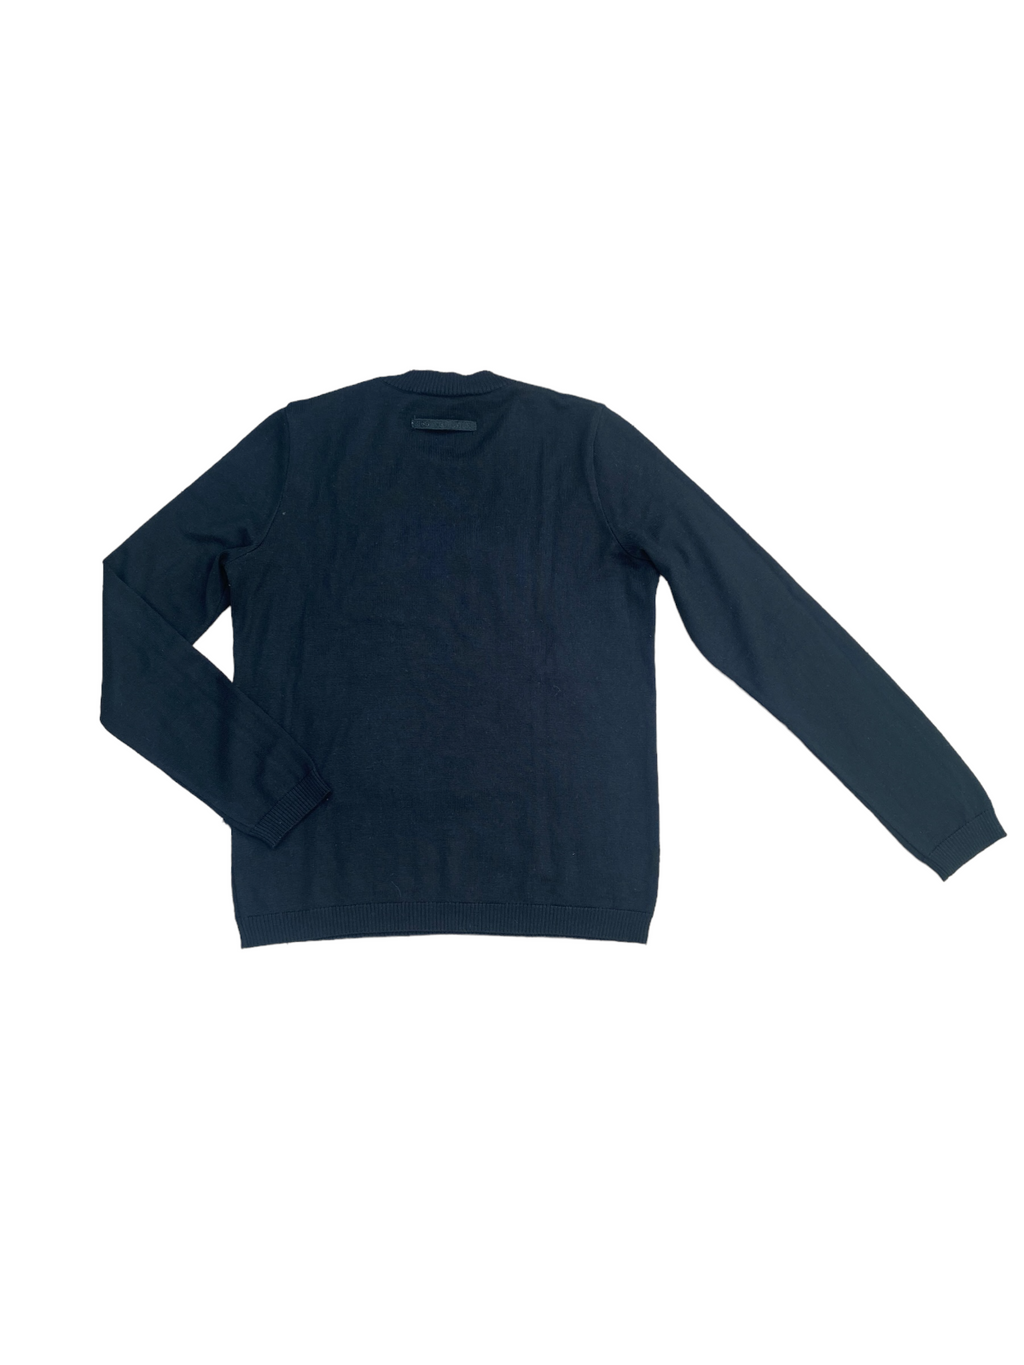 Black JPG Logo Sweater